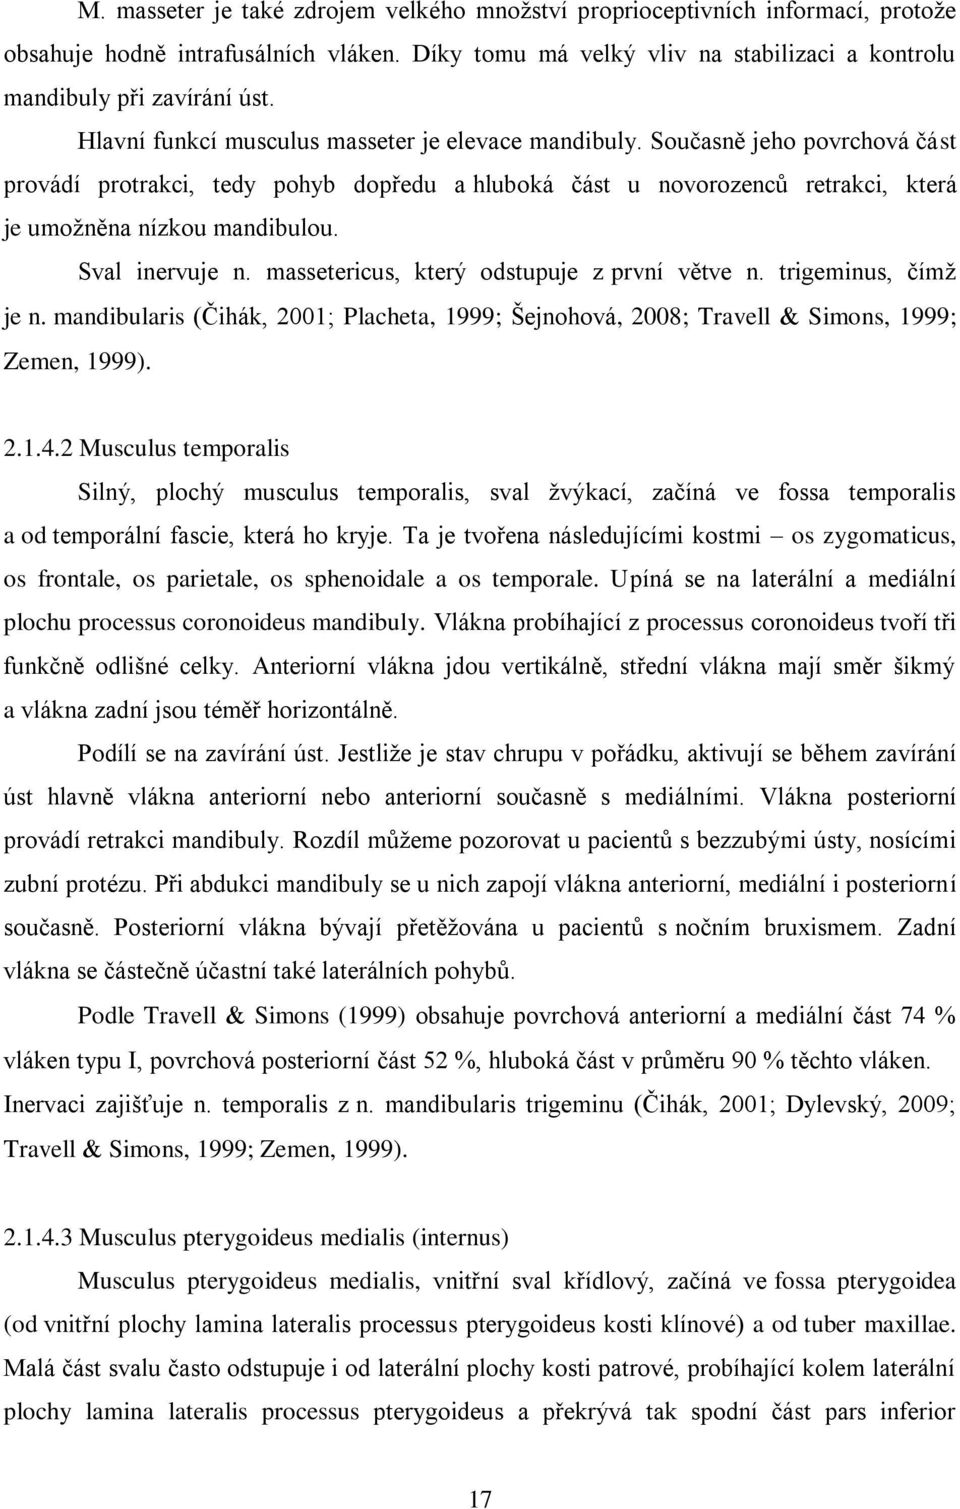 Sval inervuje n. massetericus, který odstupuje z první větve n. trigeminus, čímž je n. mandibularis (Čihák, 2001; Placheta, 1999; Šejnohová, 2008; Travell Simons, 1999; Zemen, 1999). 2.1.4.